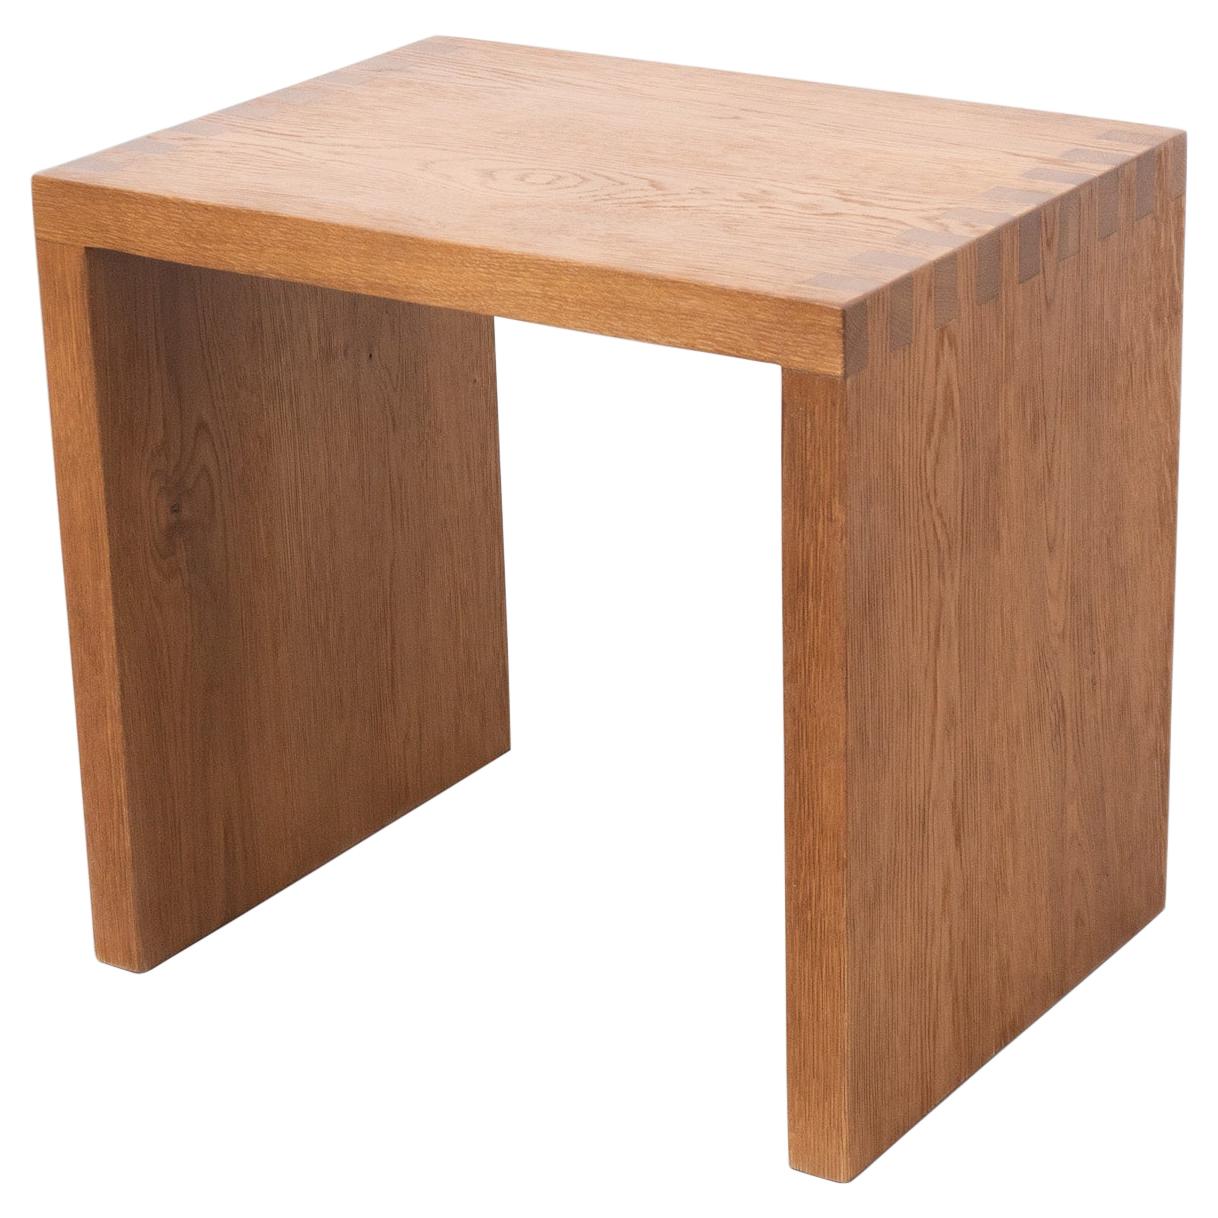 Dada Est. Contemporary Solid Oak Low Table